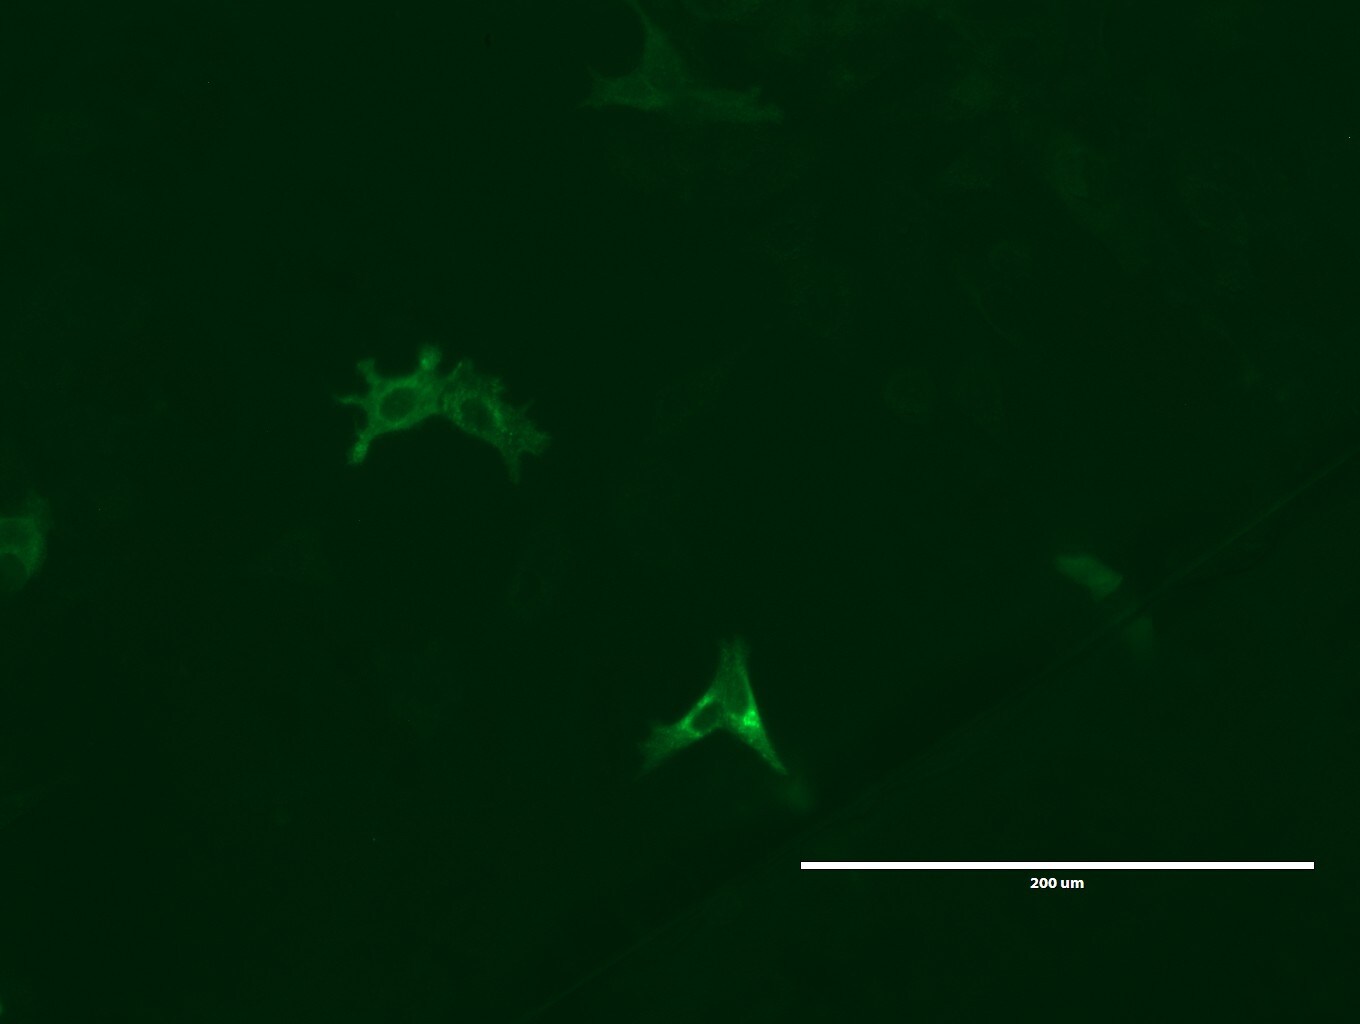 lgr5 antibody immunofluorescence